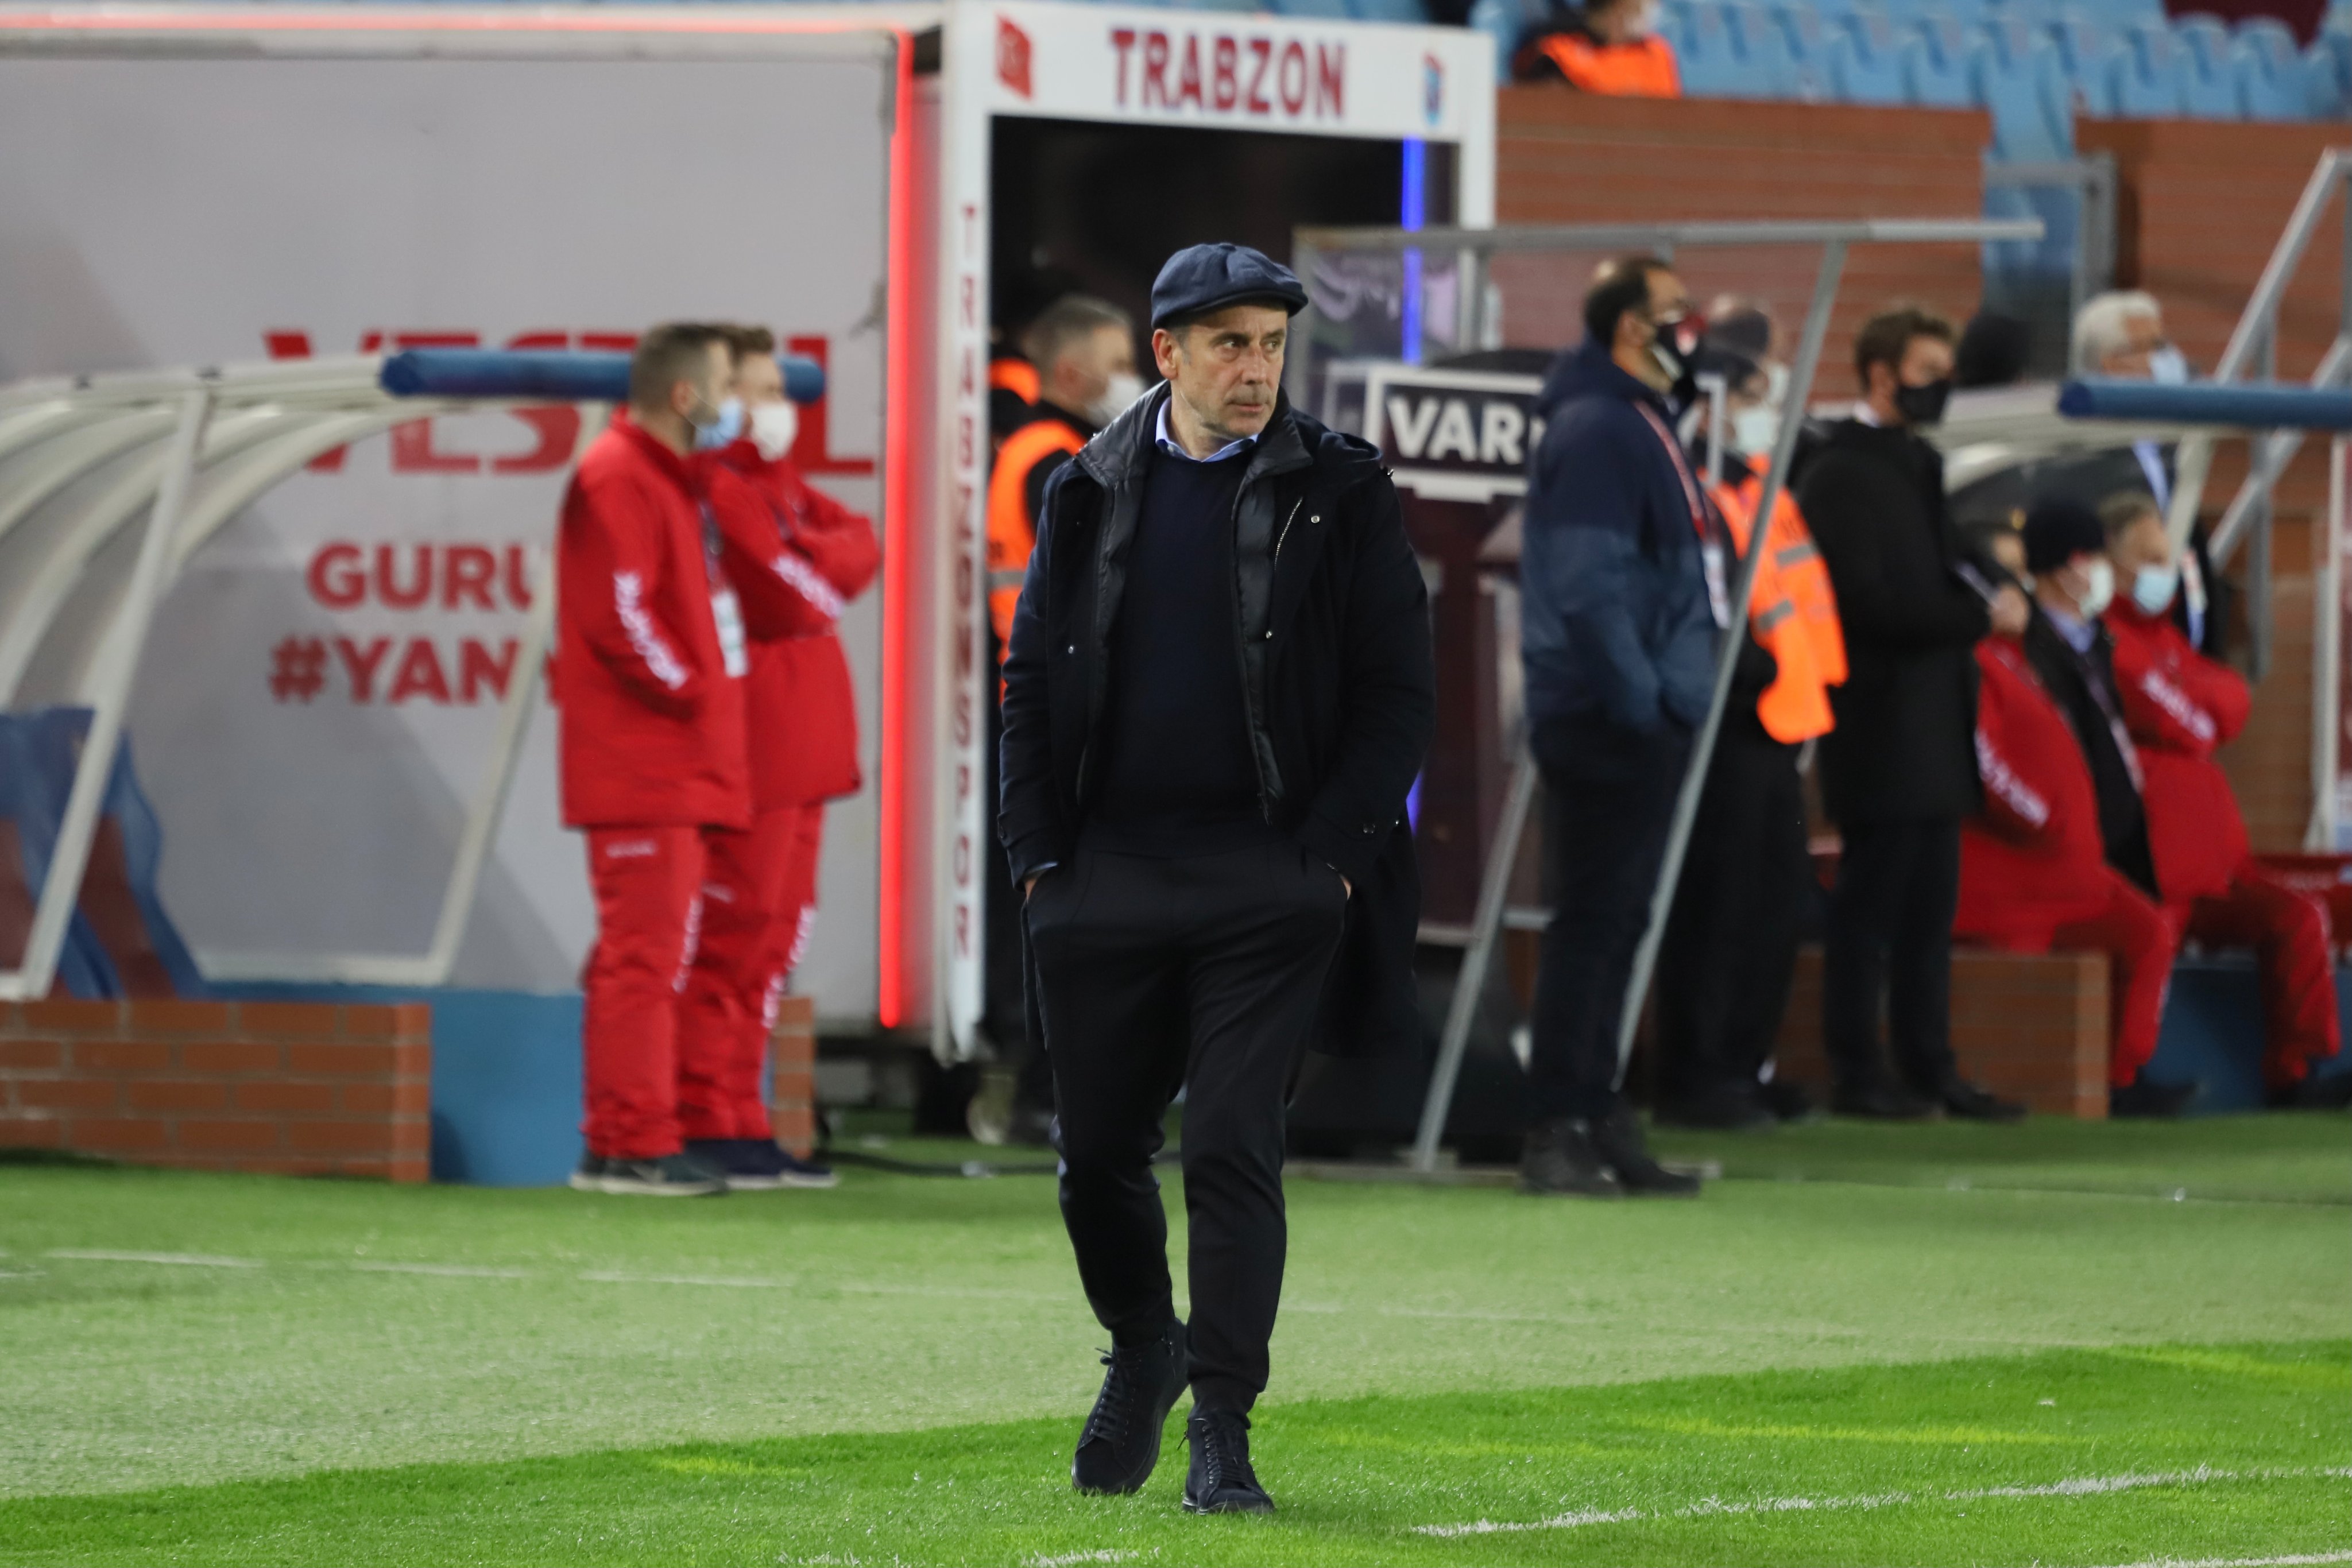 Abdullah Avcı Trabzonspor tarihine geçti  OptoCan verilerine göre Abdullah Avcı Süper Lig tarihinde Trabzonspor'un başında en yüksek galibiyet yüzdesi alan teknik direktör oldu;  Trabzonspor'un kötü gidişatını geldiği günden beri üstüne koyarak geliştiren teknik direktör, Abdullah Avcı taraflı tatafsız herkesin takdirini kazandı.        1 - Süper Lig tarihinde @Trabzonspor'un başında en yüksek galibiyet yüzdesi (%68) ve puan ortalaması (2.2) yakalayan teknik direktör Abdullah Avcı. Kasket